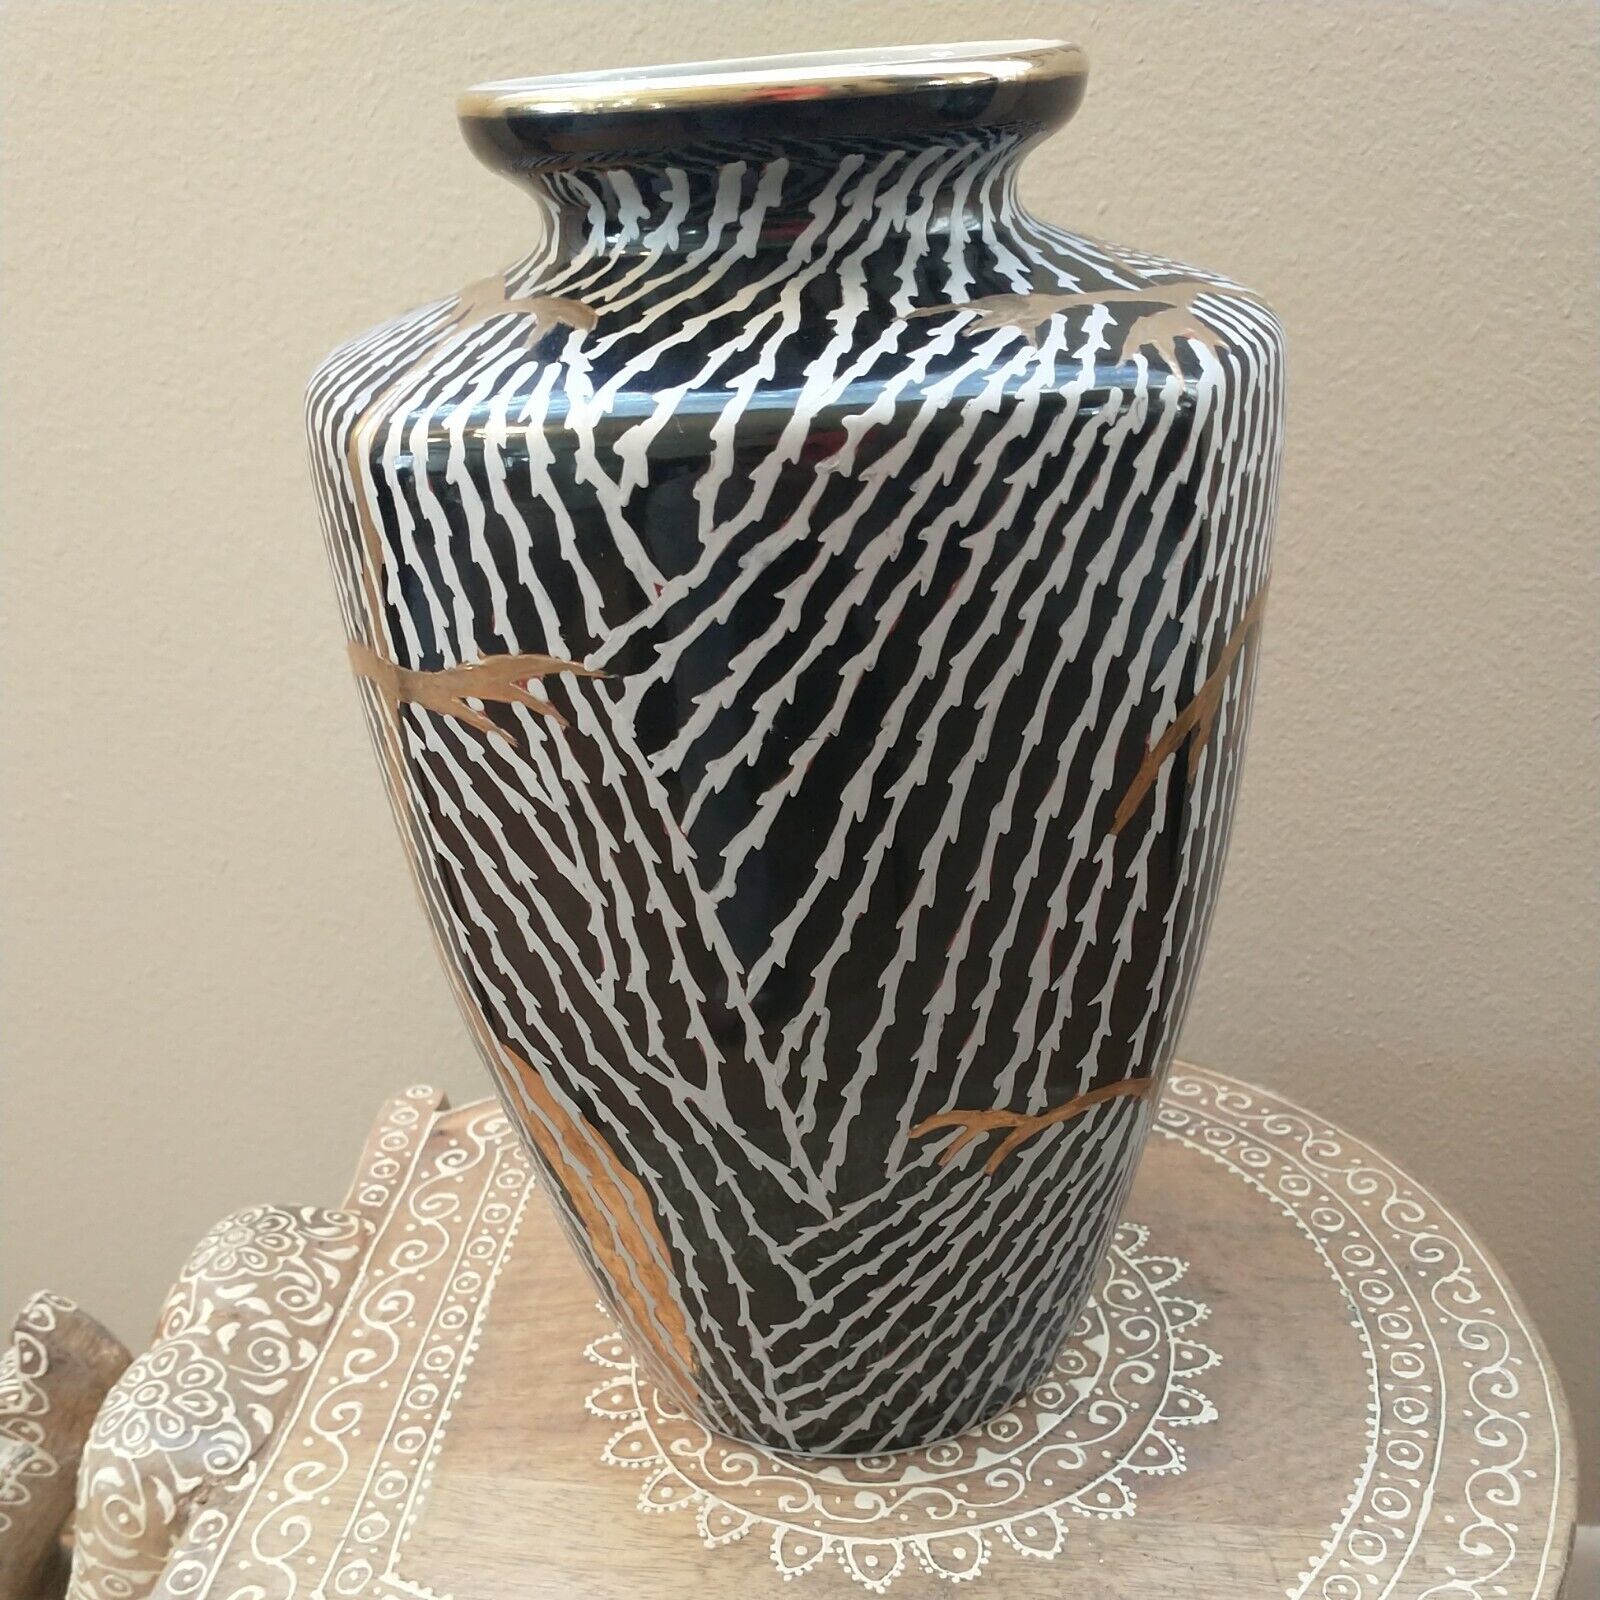 Vintage porcelain zebra designed vase